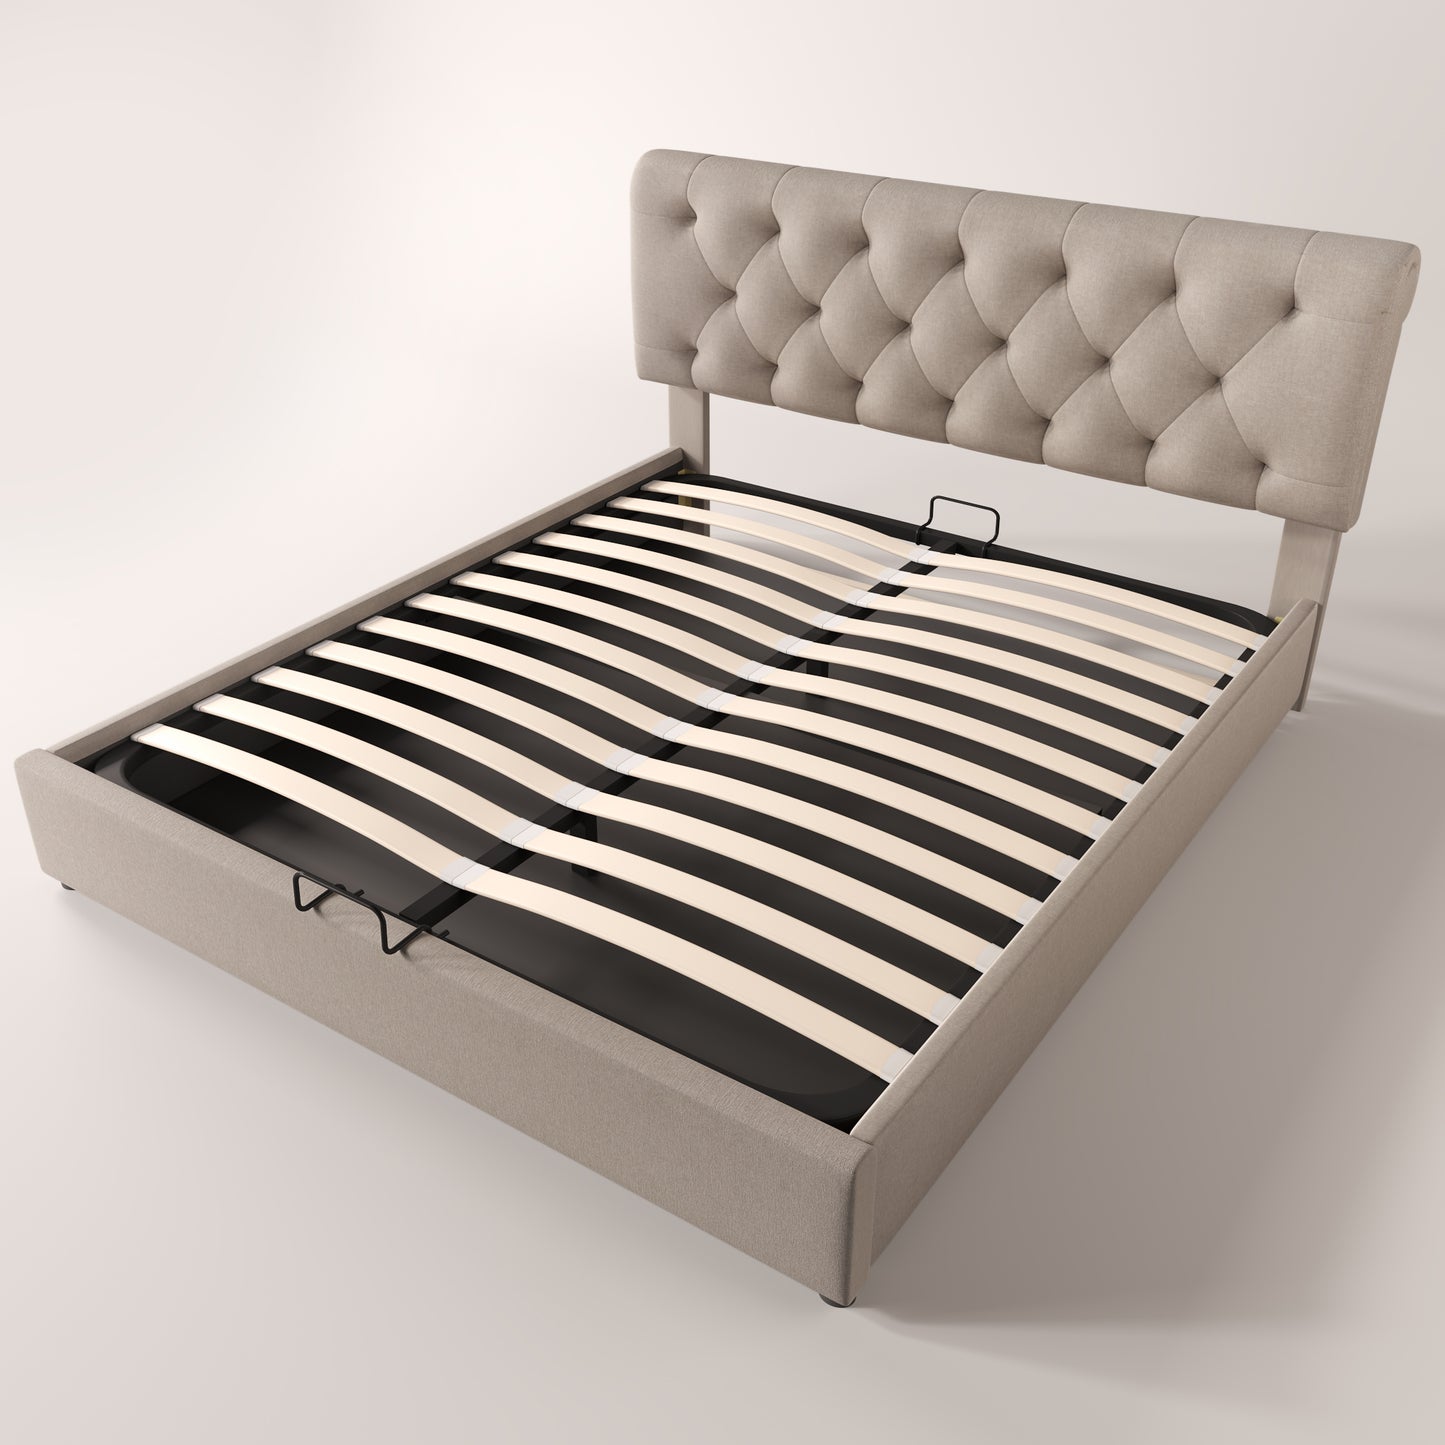 Säng 160x200 cm,   säng med lamell ram  naturlig